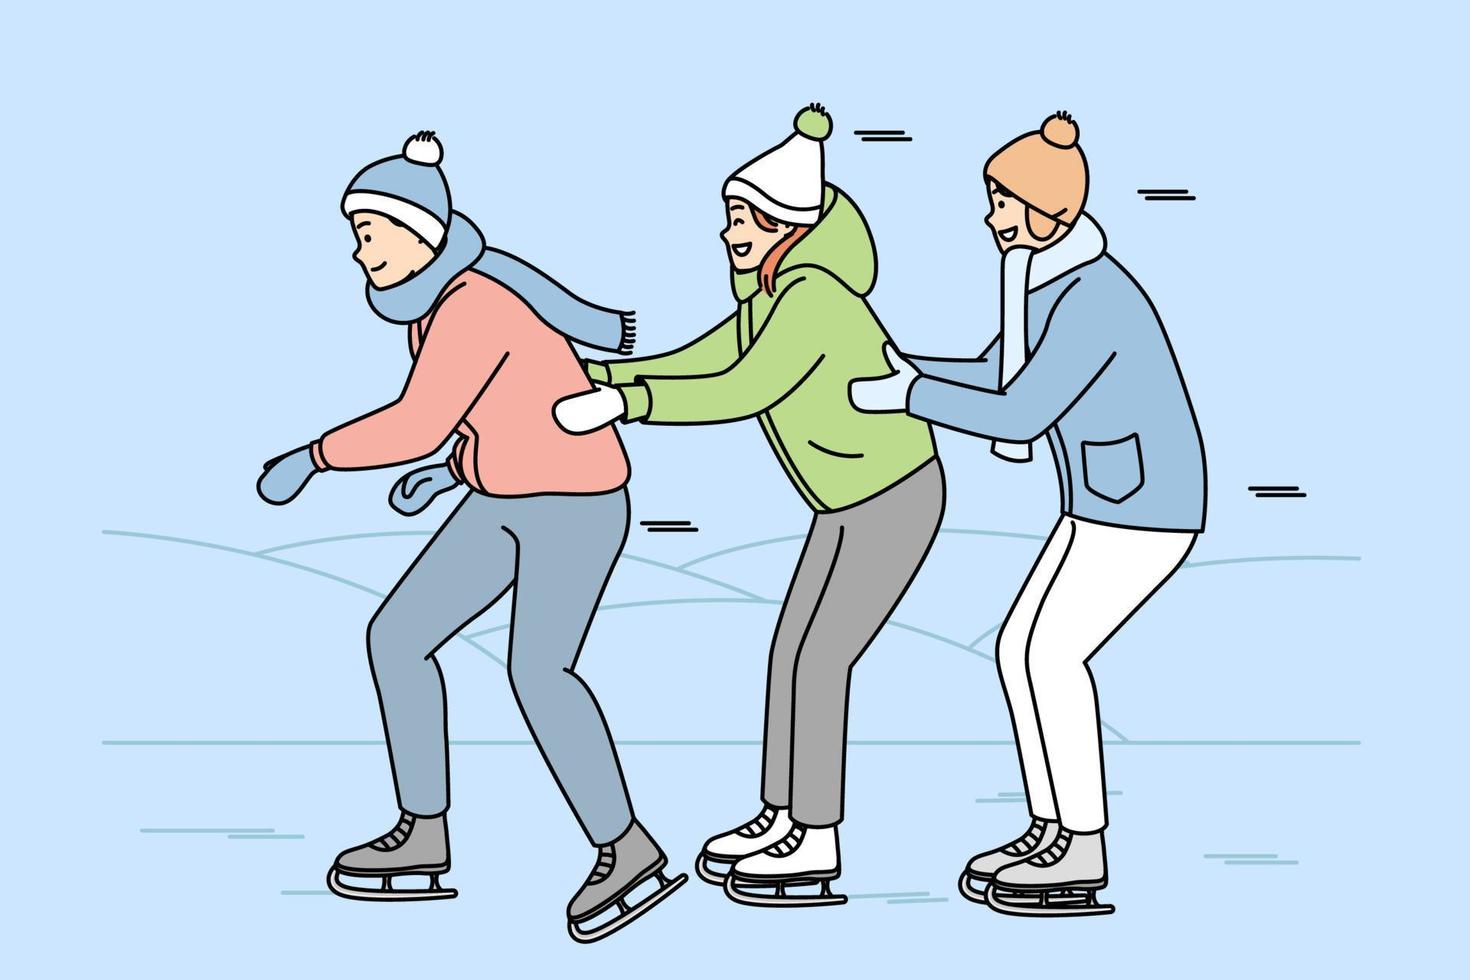 garota, caras em roupas quentes estão patinando abraçados. jovens patinadores se divertem na pista de gelo. Jogos de inverno. esporte, estilo de vida saudável. vetor linha arte multicolorida ilustração isolada em azul.